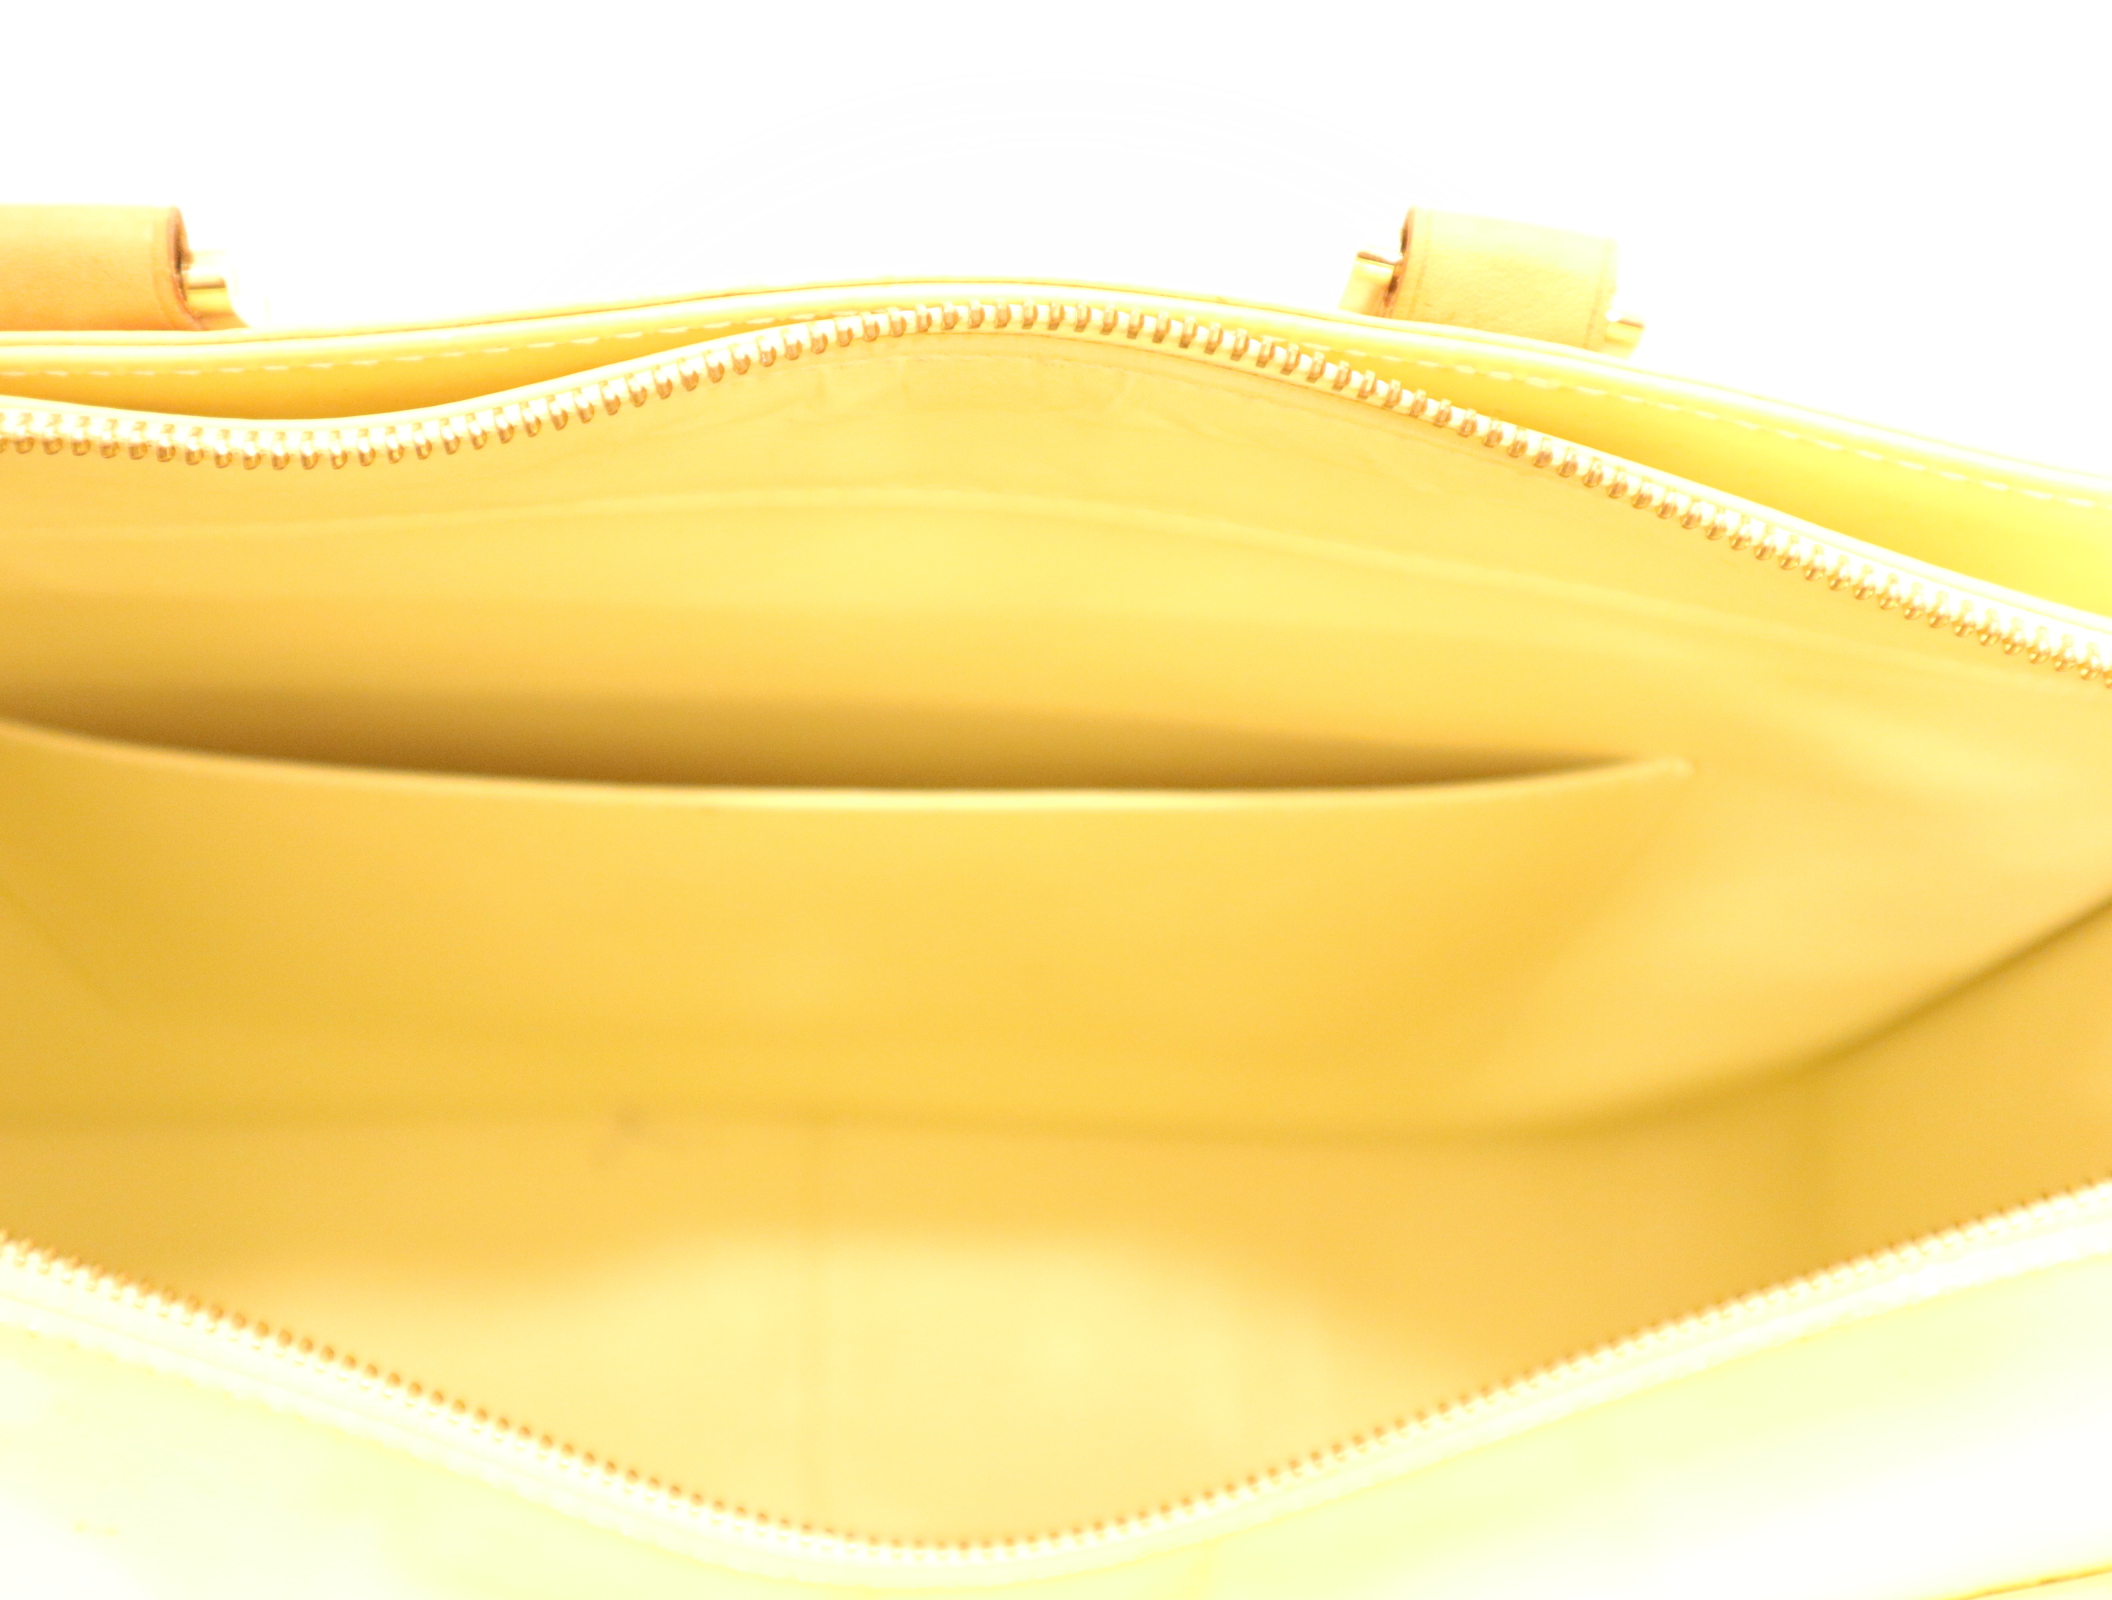 Louis Vuitton Handtaschen aus Leder - Gelb - 29109416